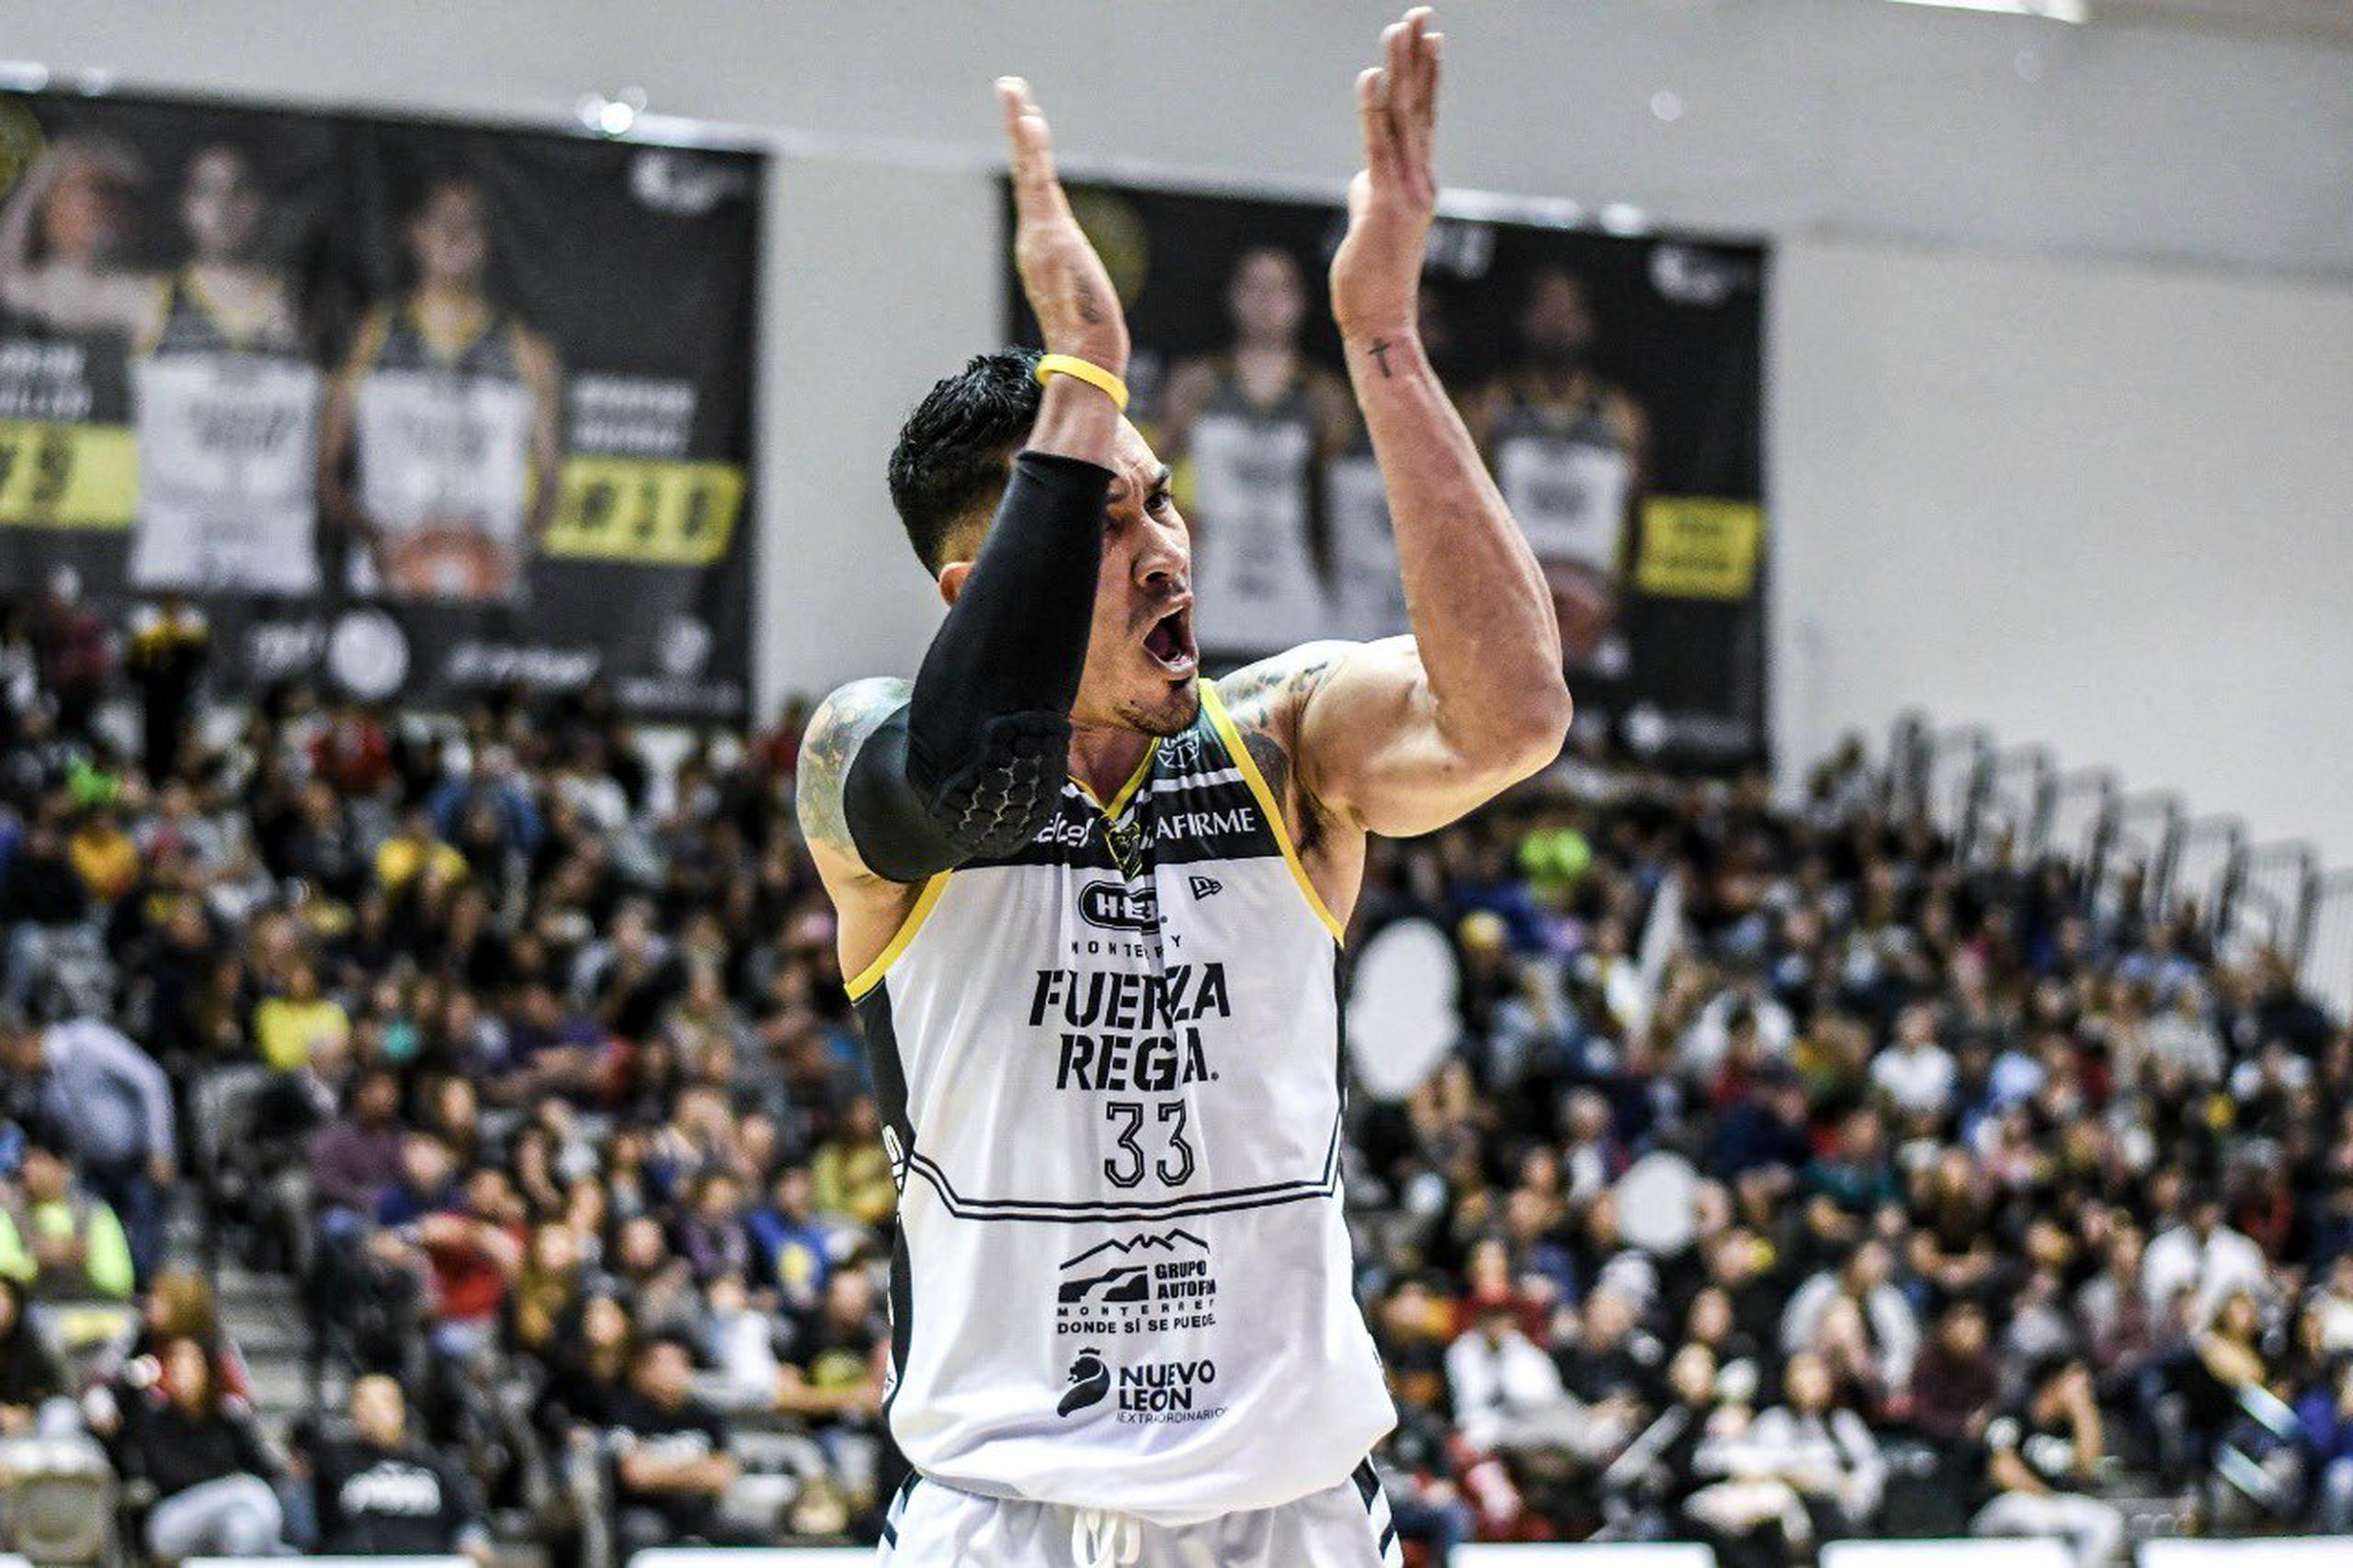 David Huertas y Fuerza Regia defiende su cetro como campeones de la Zona Este en busca de regresar a la final de la Liga Nacional de Baloncesto de México, donde también son campeones defensores.